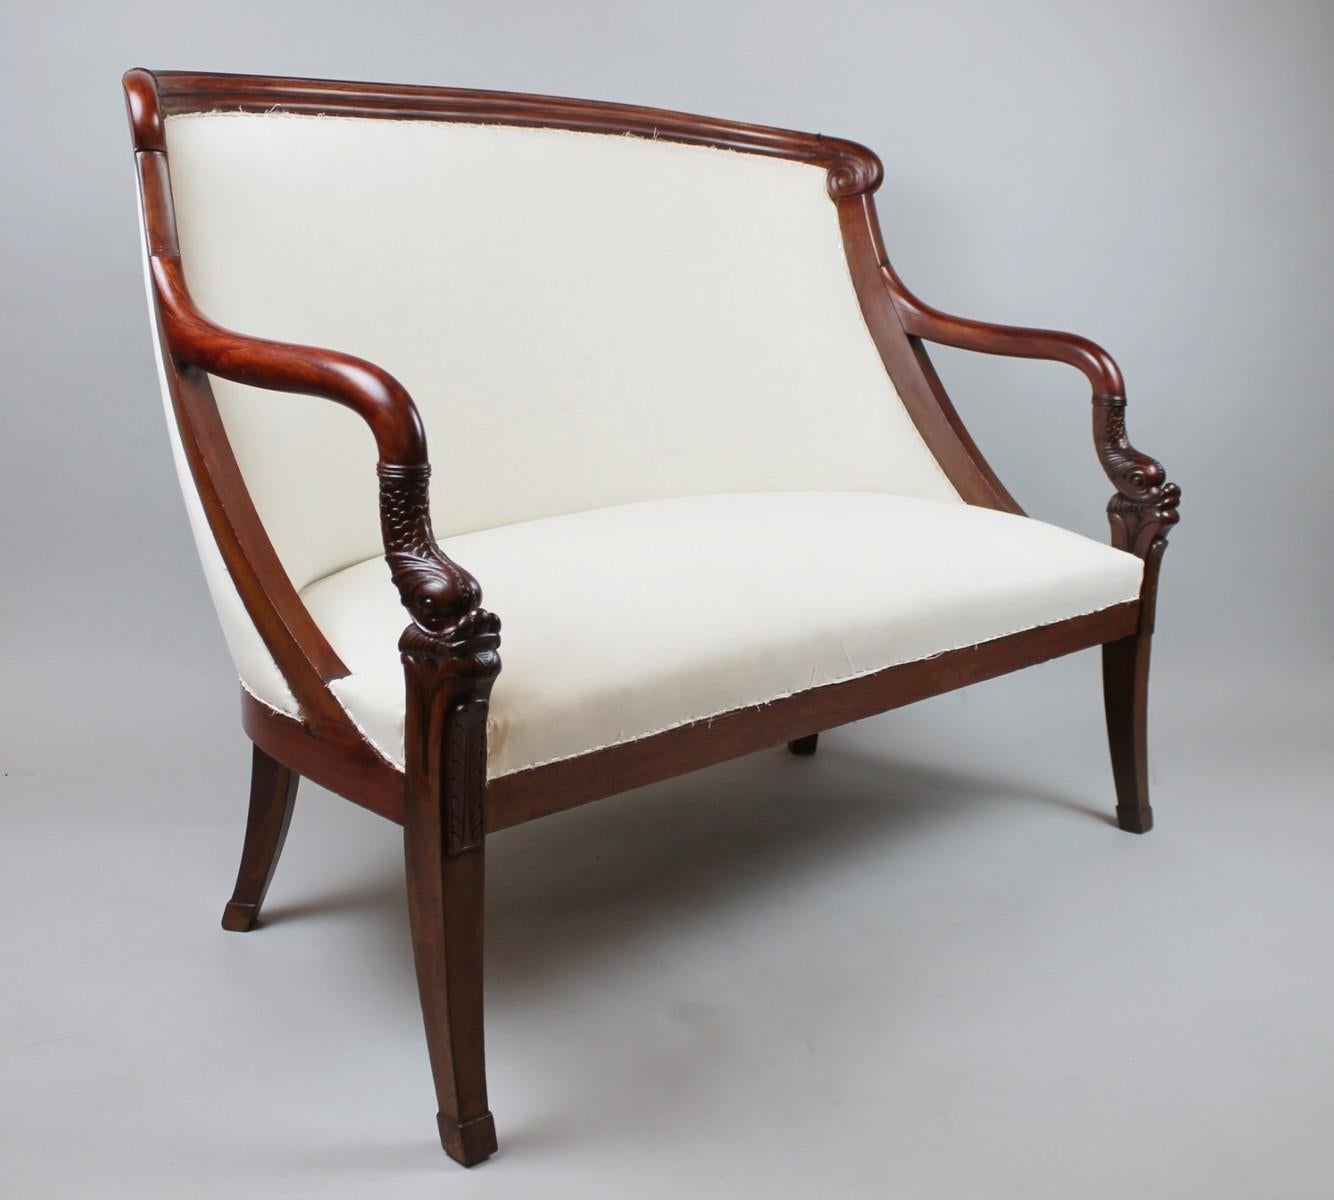 Wood Empire Style Sofa in Mahogany, Late 19th Century